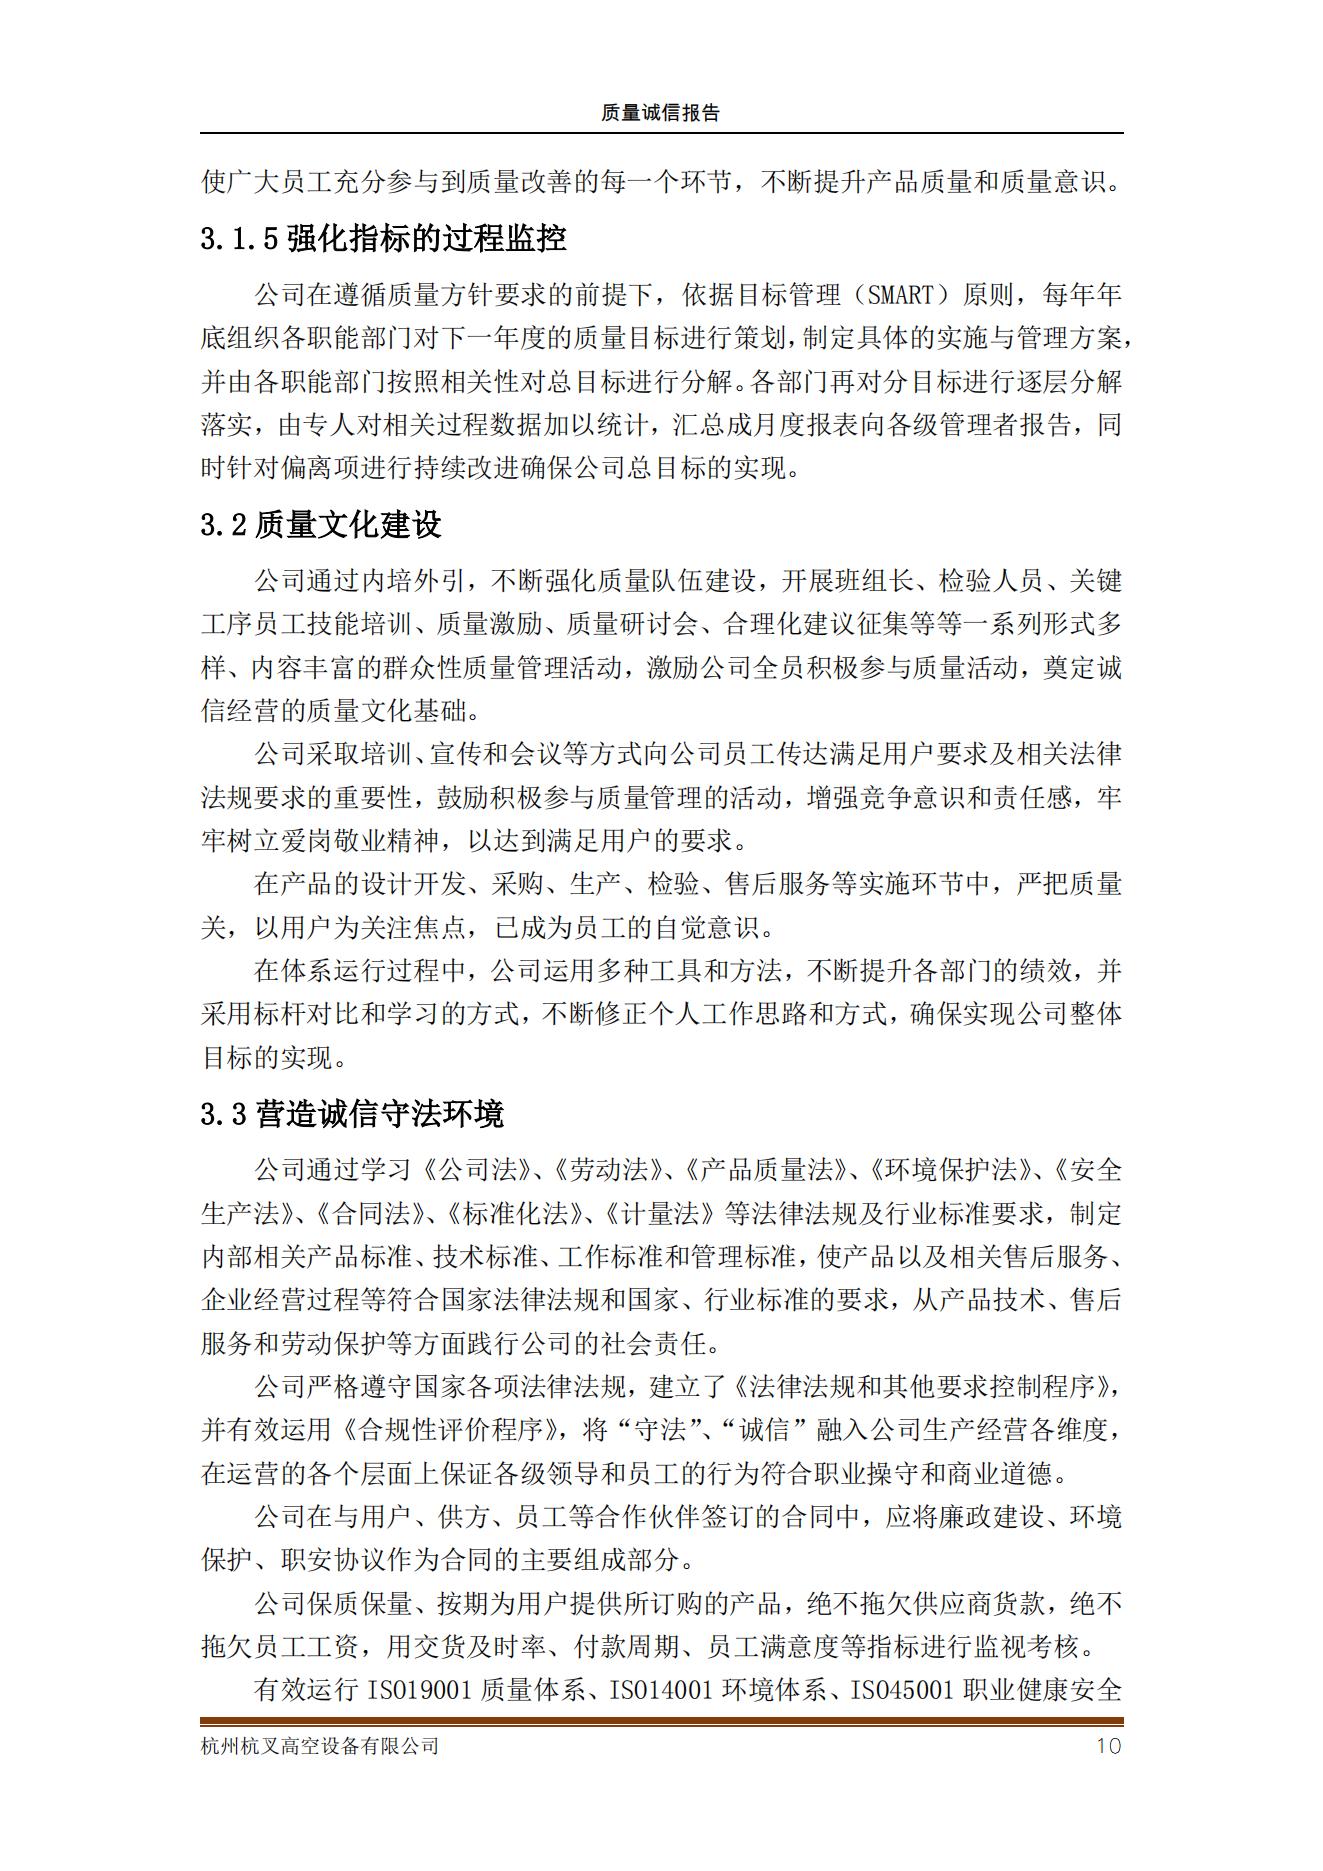 杭州杭叉高空設備公司2021年質量誠信報告(圖10)